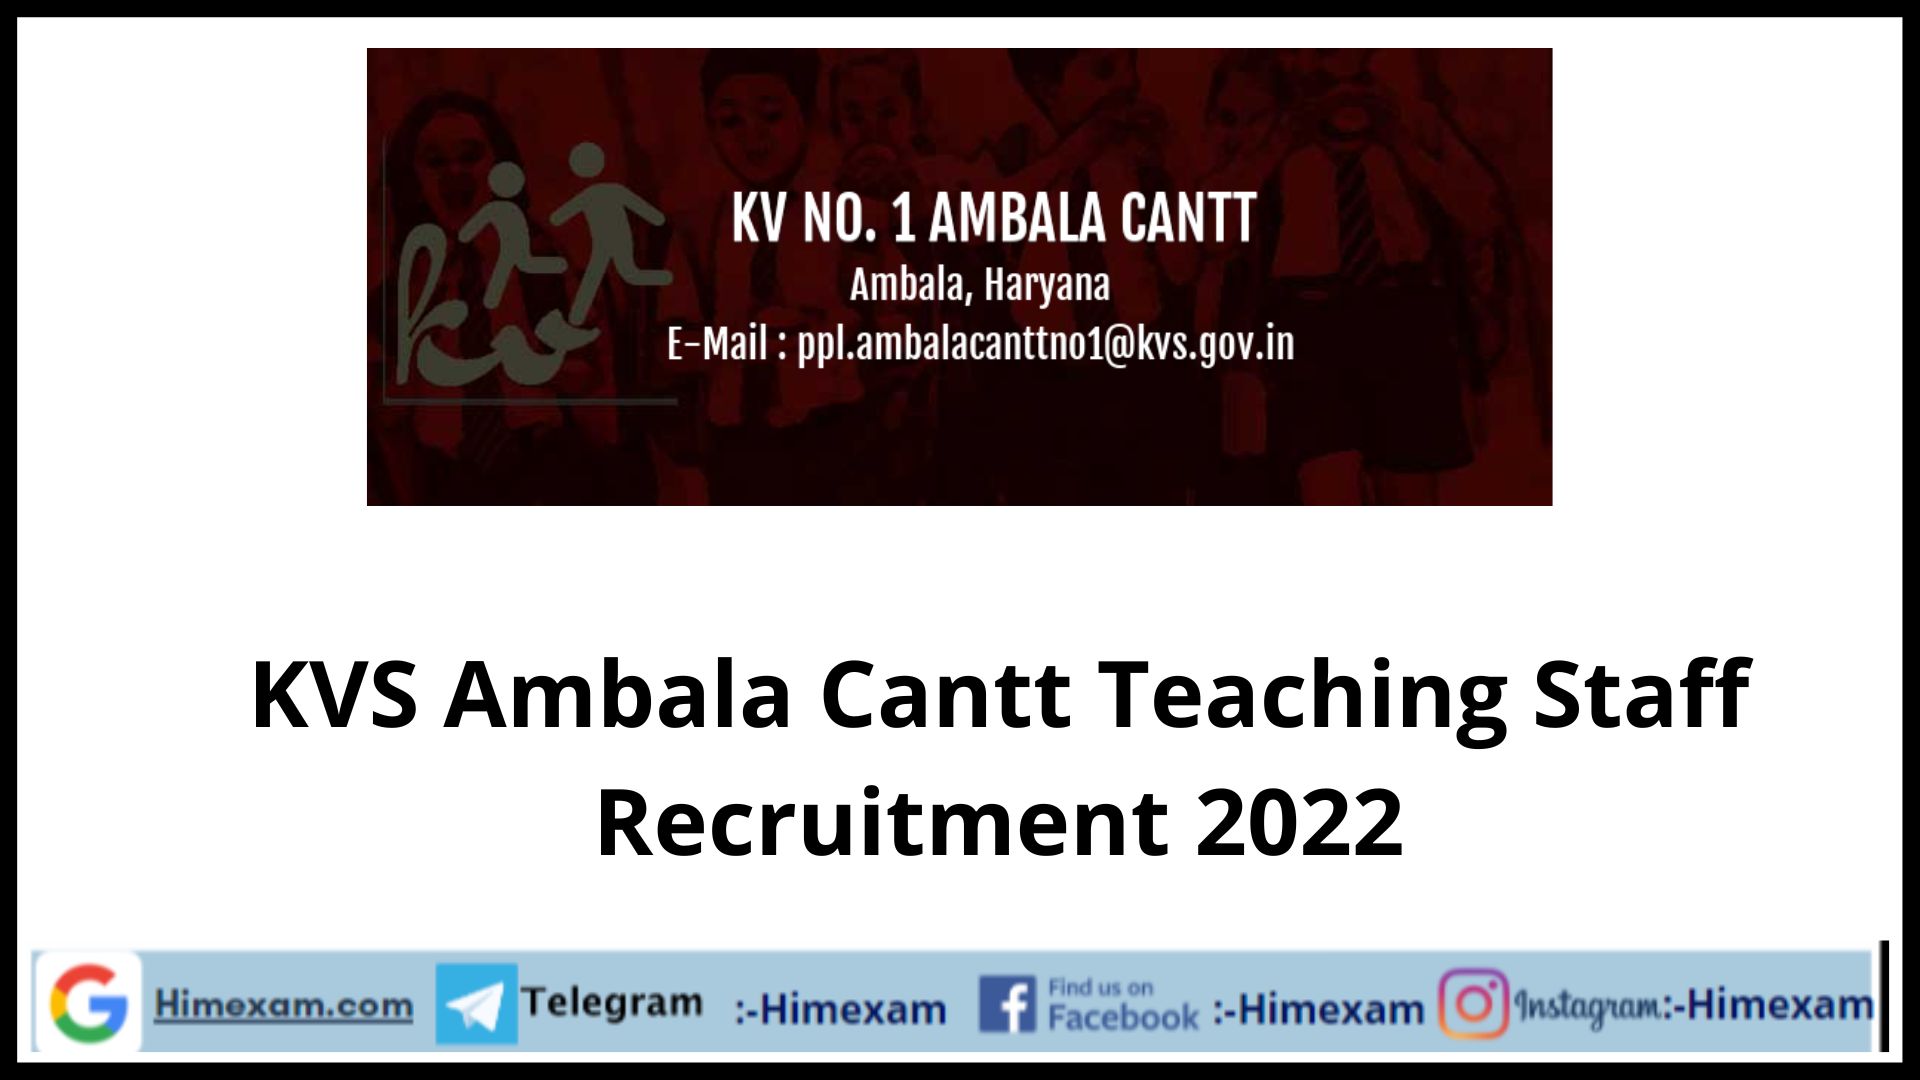 KVS Ambala Cantt Teaching Staff Recruitment 2022